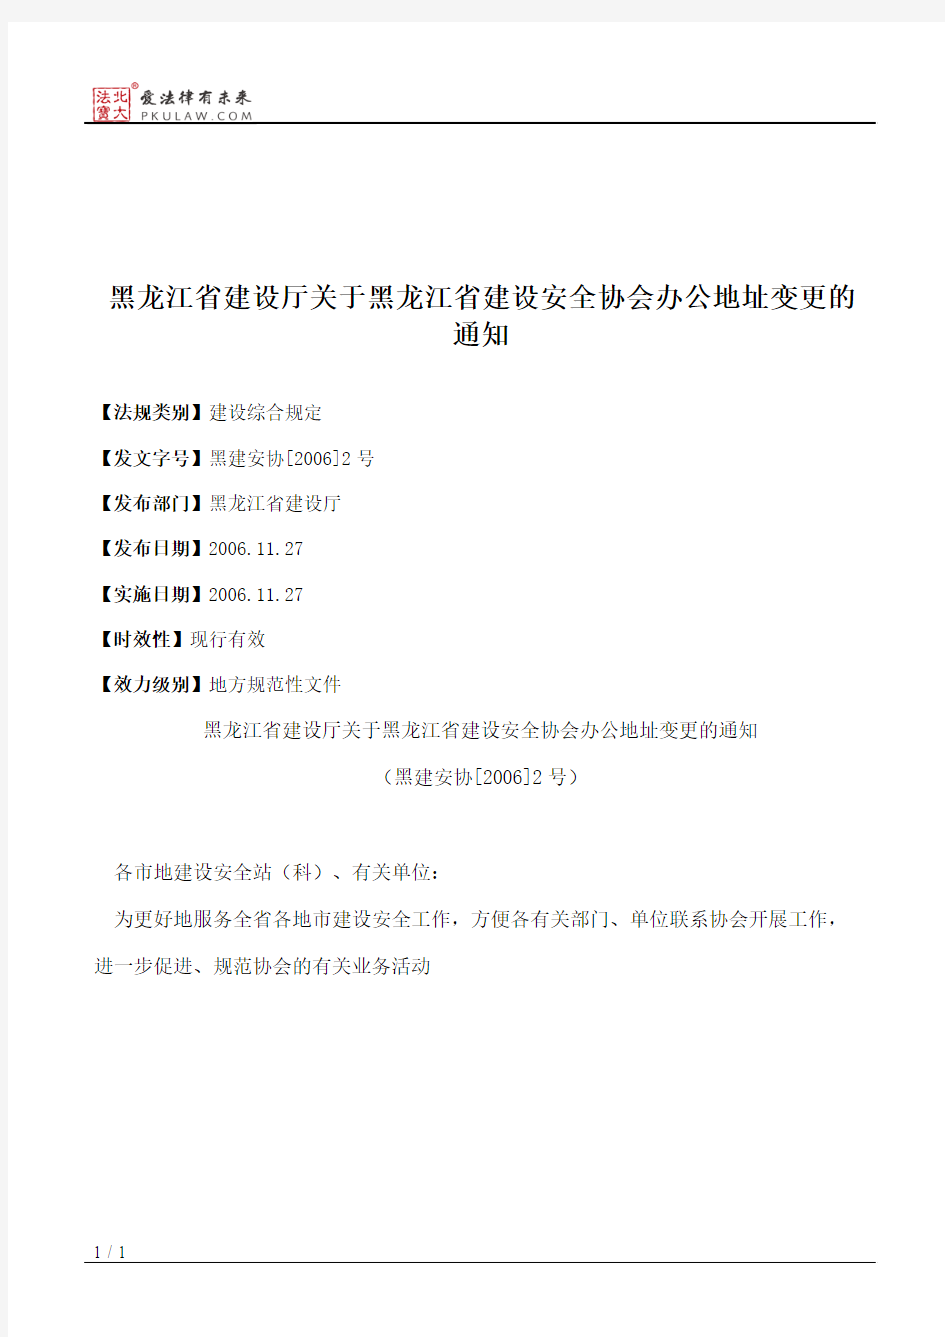 黑龙江省建设厅关于黑龙江省建设安全协会办公地址变更的通知